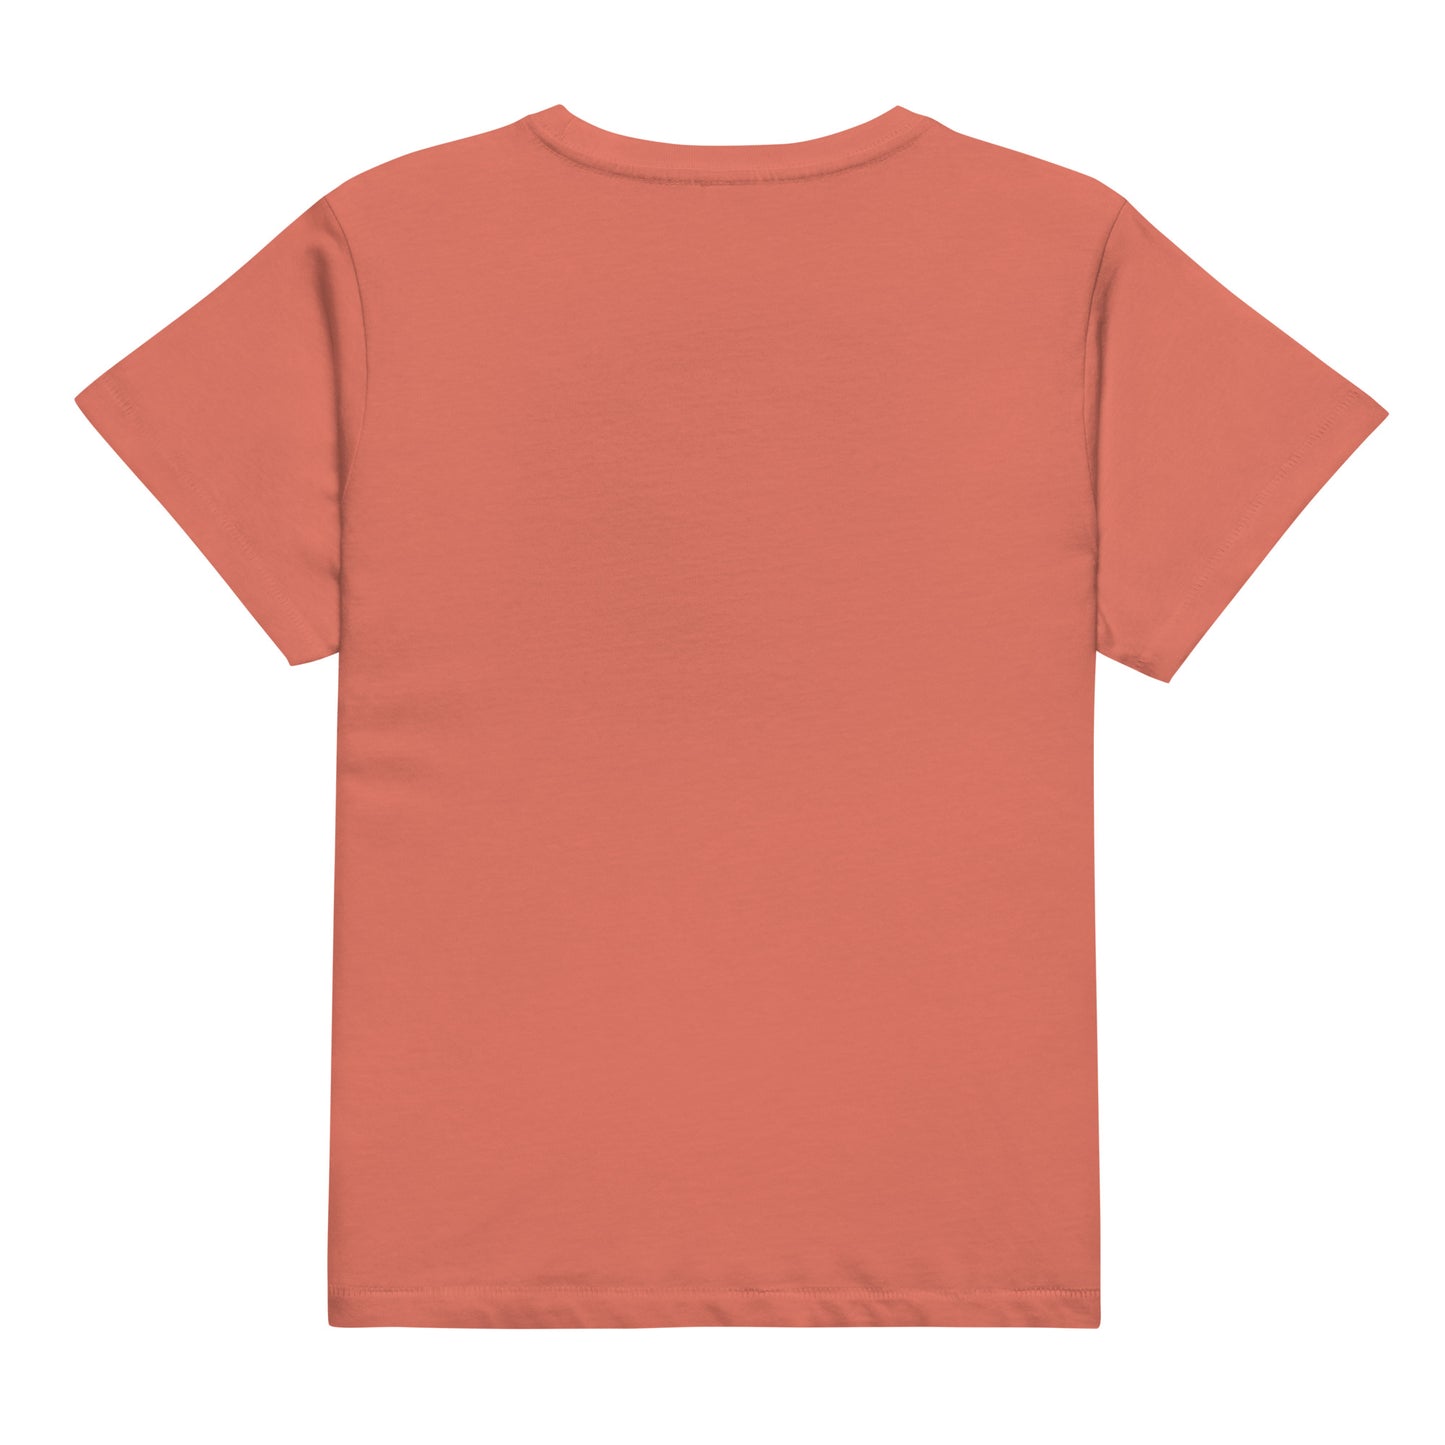 Q114 - เสื้อยืดสตรีเอวสูง (เตรียมตัว! : สีแดง)